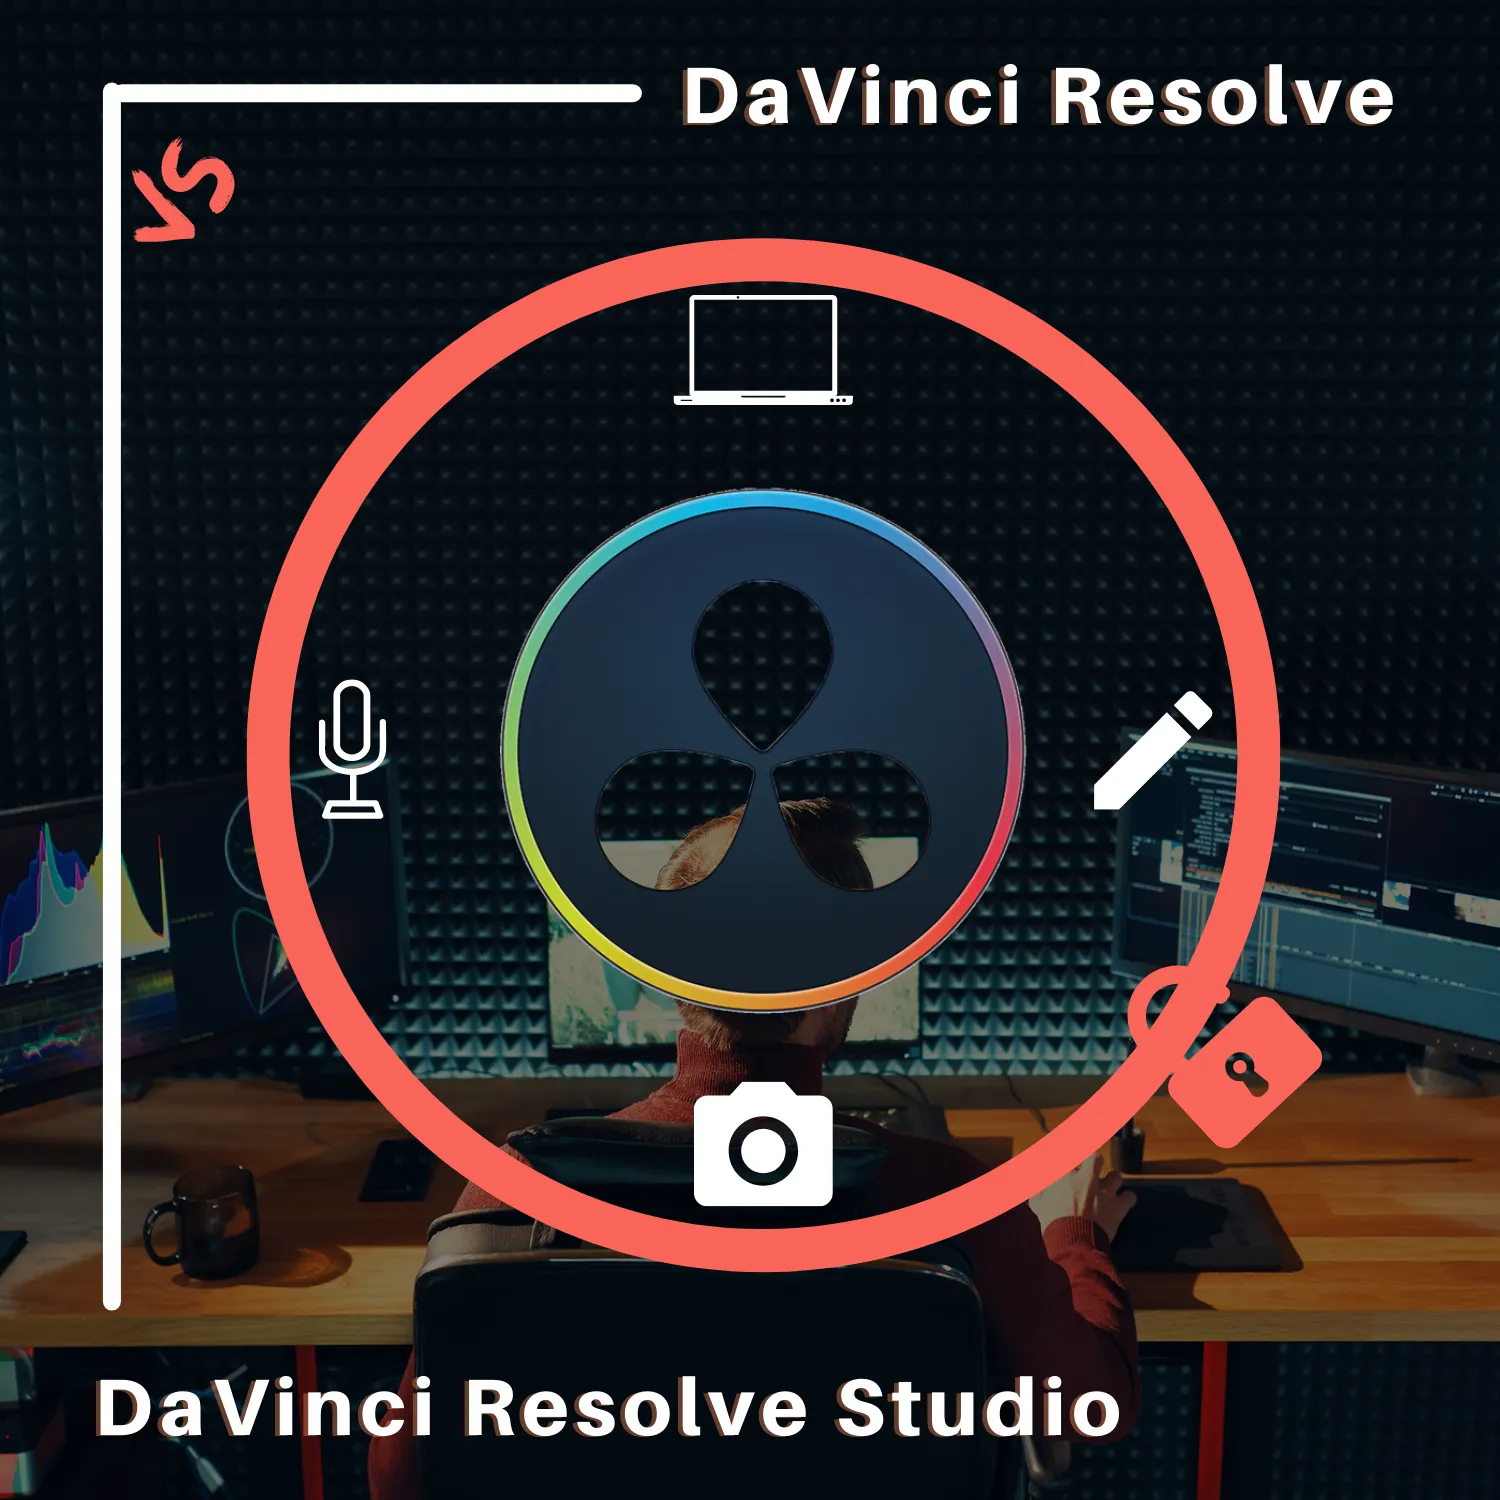 DaVinci Resolve vs DaVinci Resolve Studio